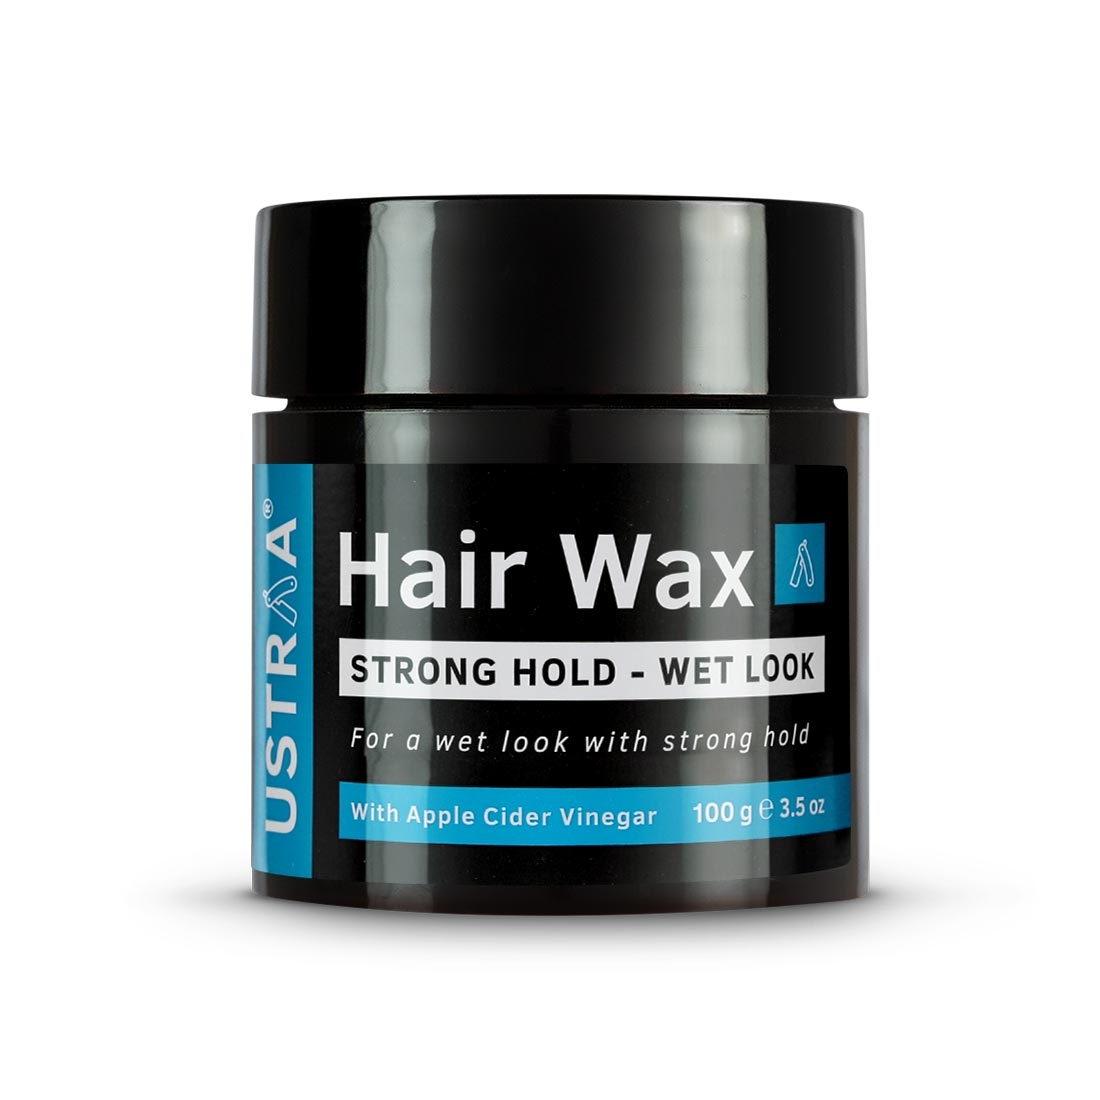 Ustraa | Ustraa O.G Deodorant - 150ml & Hair Wax Strong Hold Wet Look - 100g Combo 1